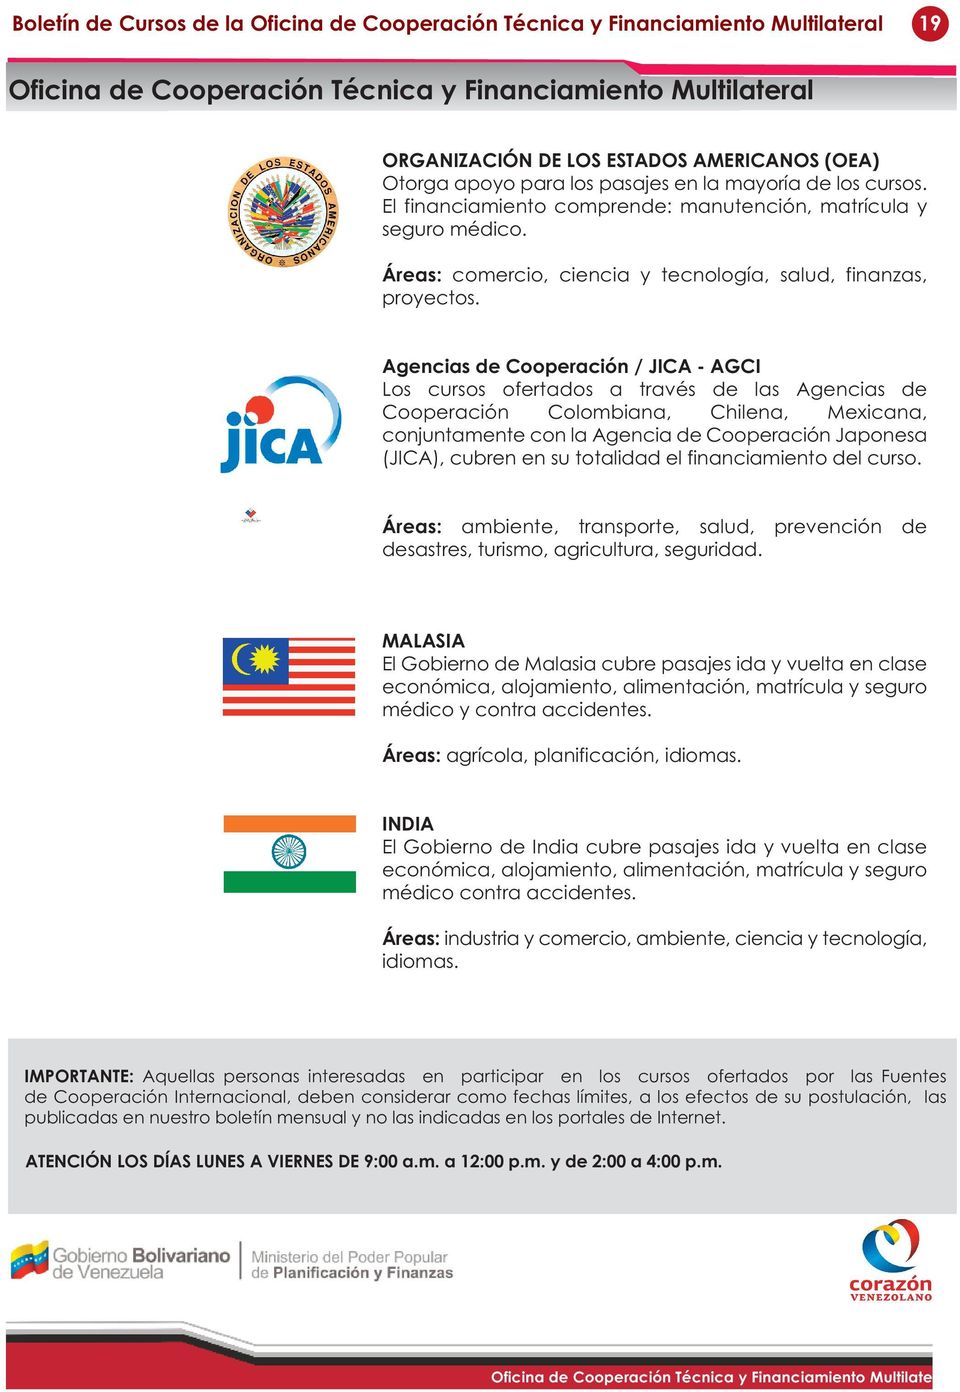 Agencias de Cooperación / JICA - AGCI Los cursos ofertados a través de las Agencias de Cooperación Colombiana, Chilena, Mexicana, conjuntamente con la Agencia de Cooperación Japonesa (JICA), cubren